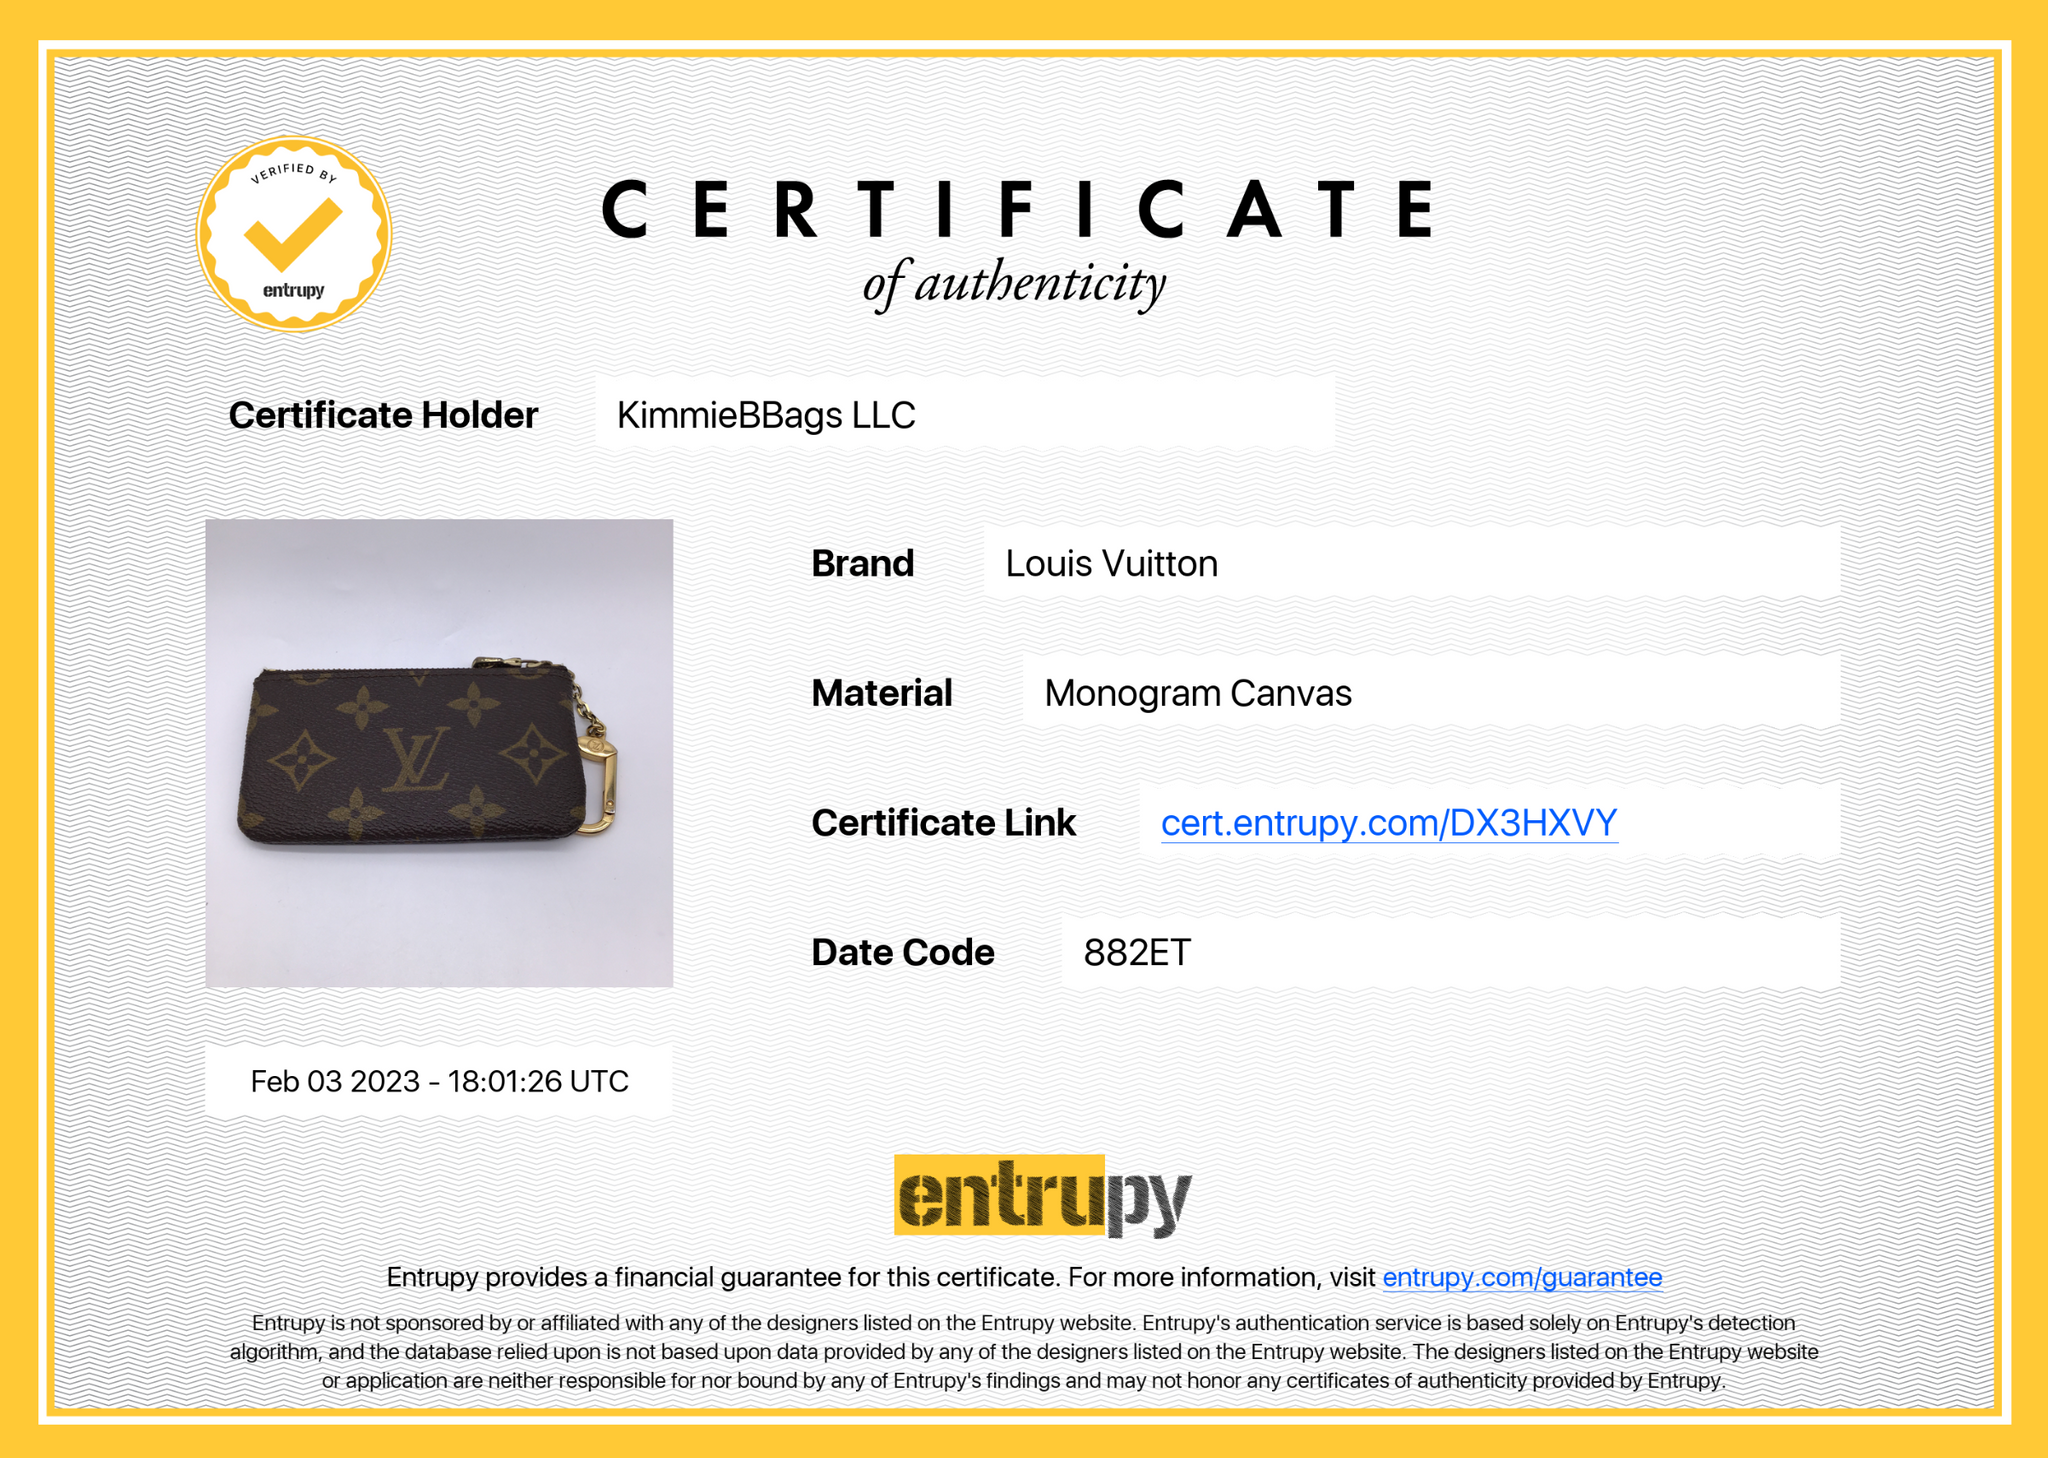 Louis Vuitton Key Pouch Pochette 872282 Perle Coin Purse Cles Cream  Monogram Vernis Leather Clutch, Louis Vuitton